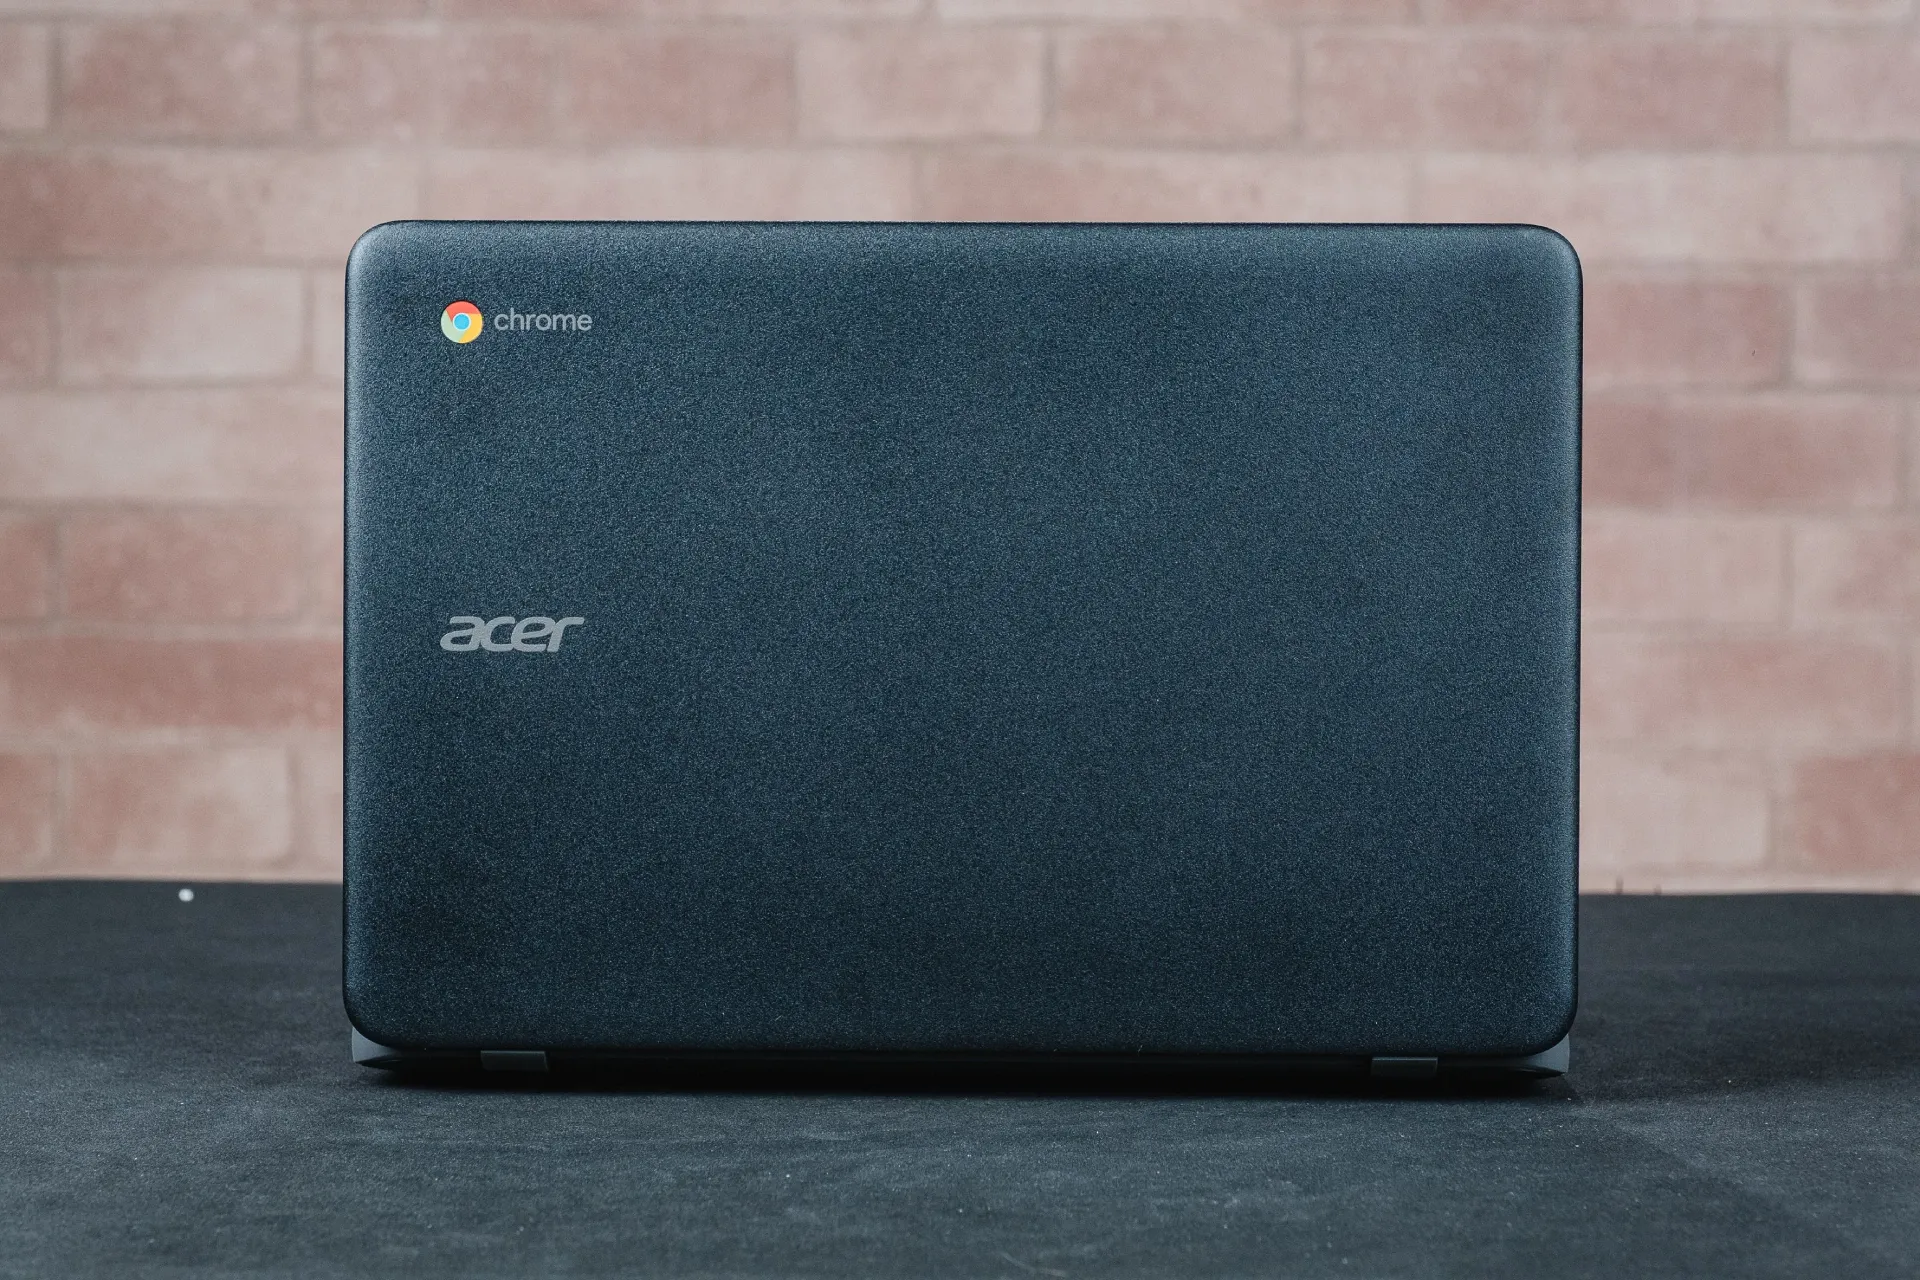 Tampa traseira do Acer Chromebook cinza, com logo do Google Chorme no canto superior esquerdo